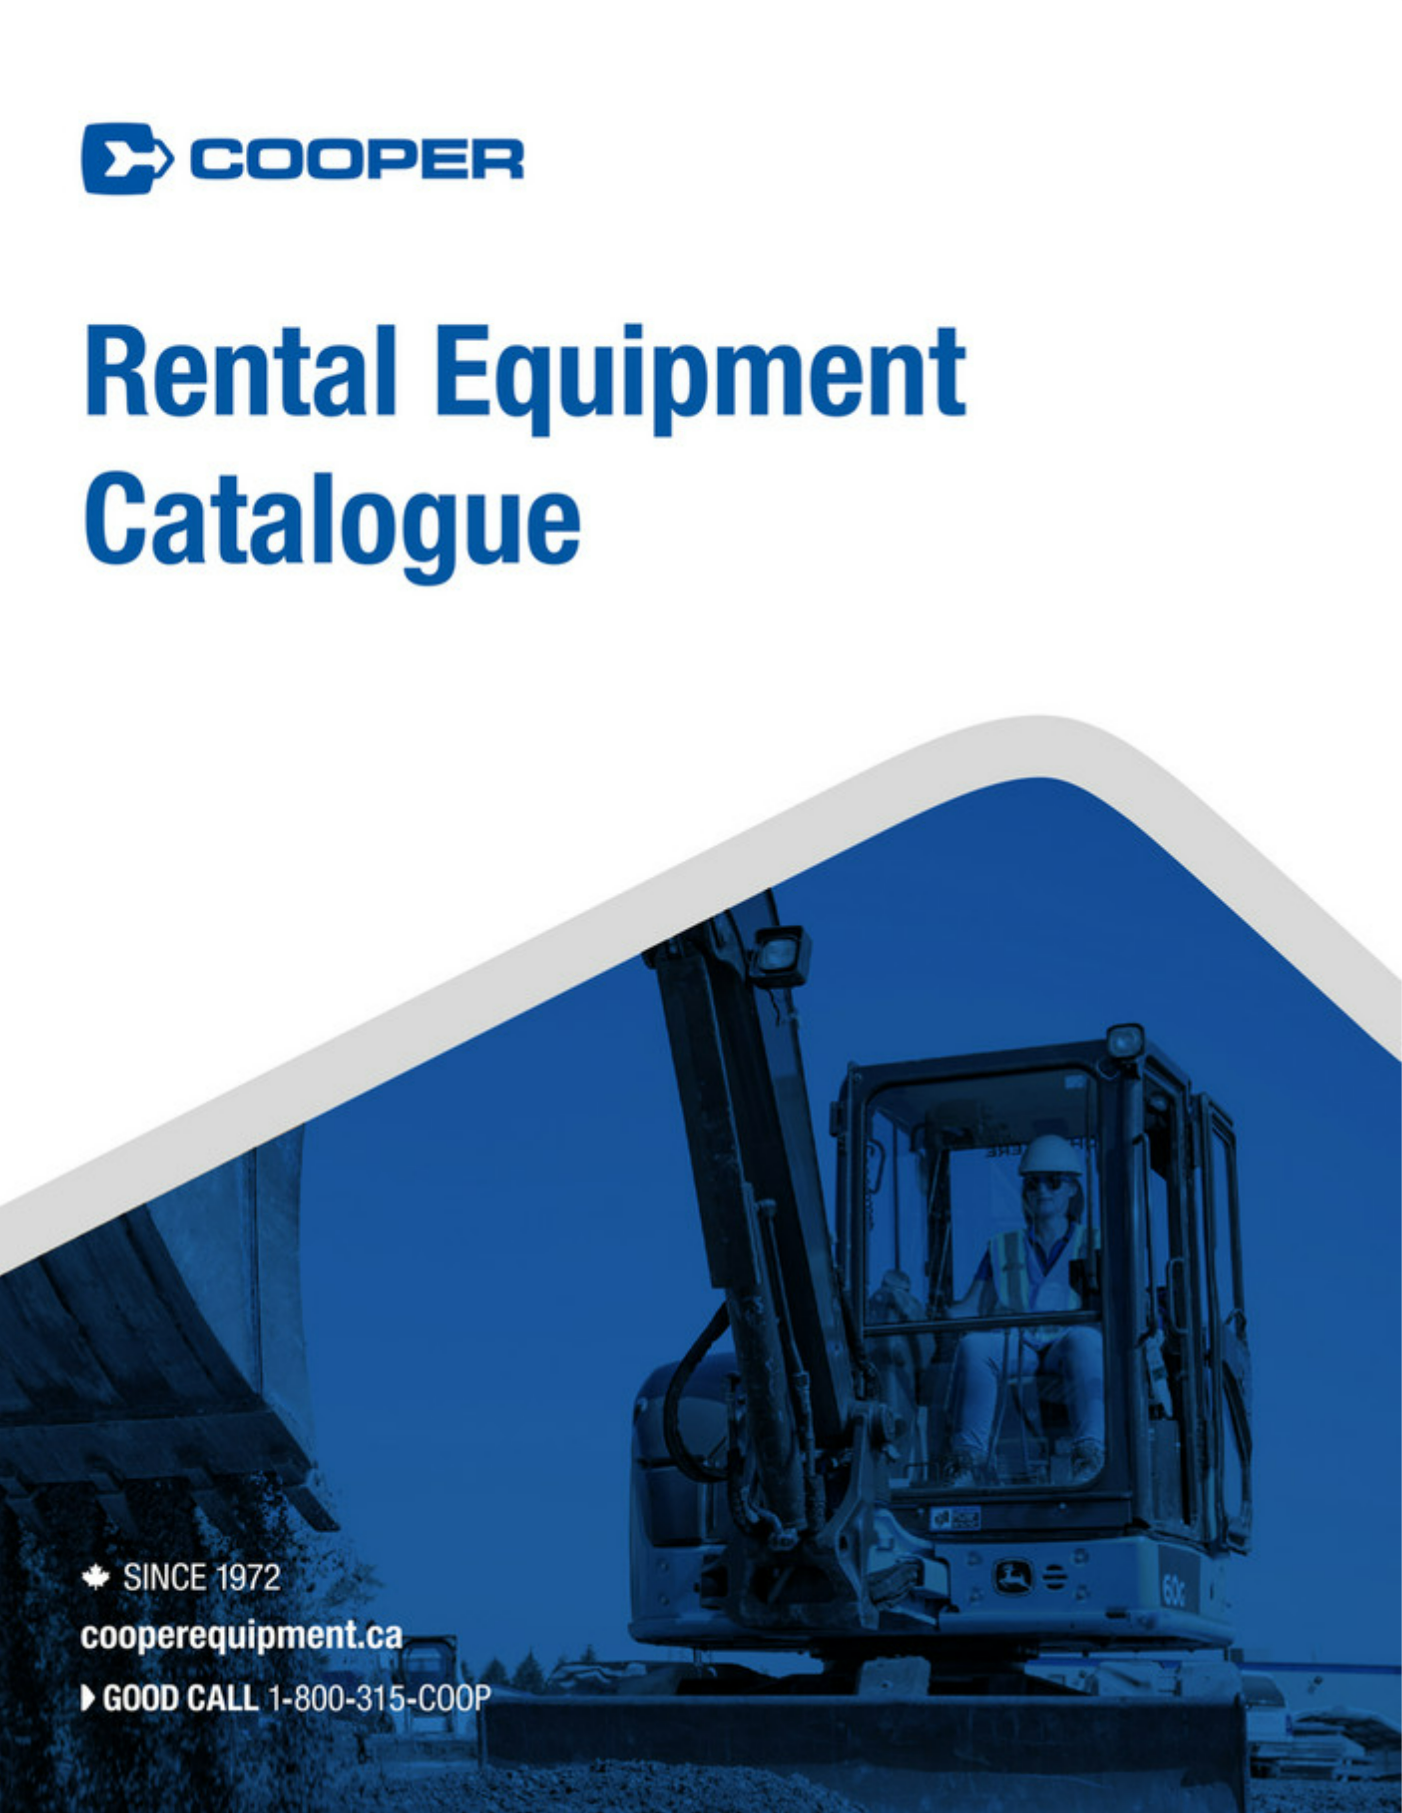 Cooper Equipment Rentals - Rental Equipment Catalogue